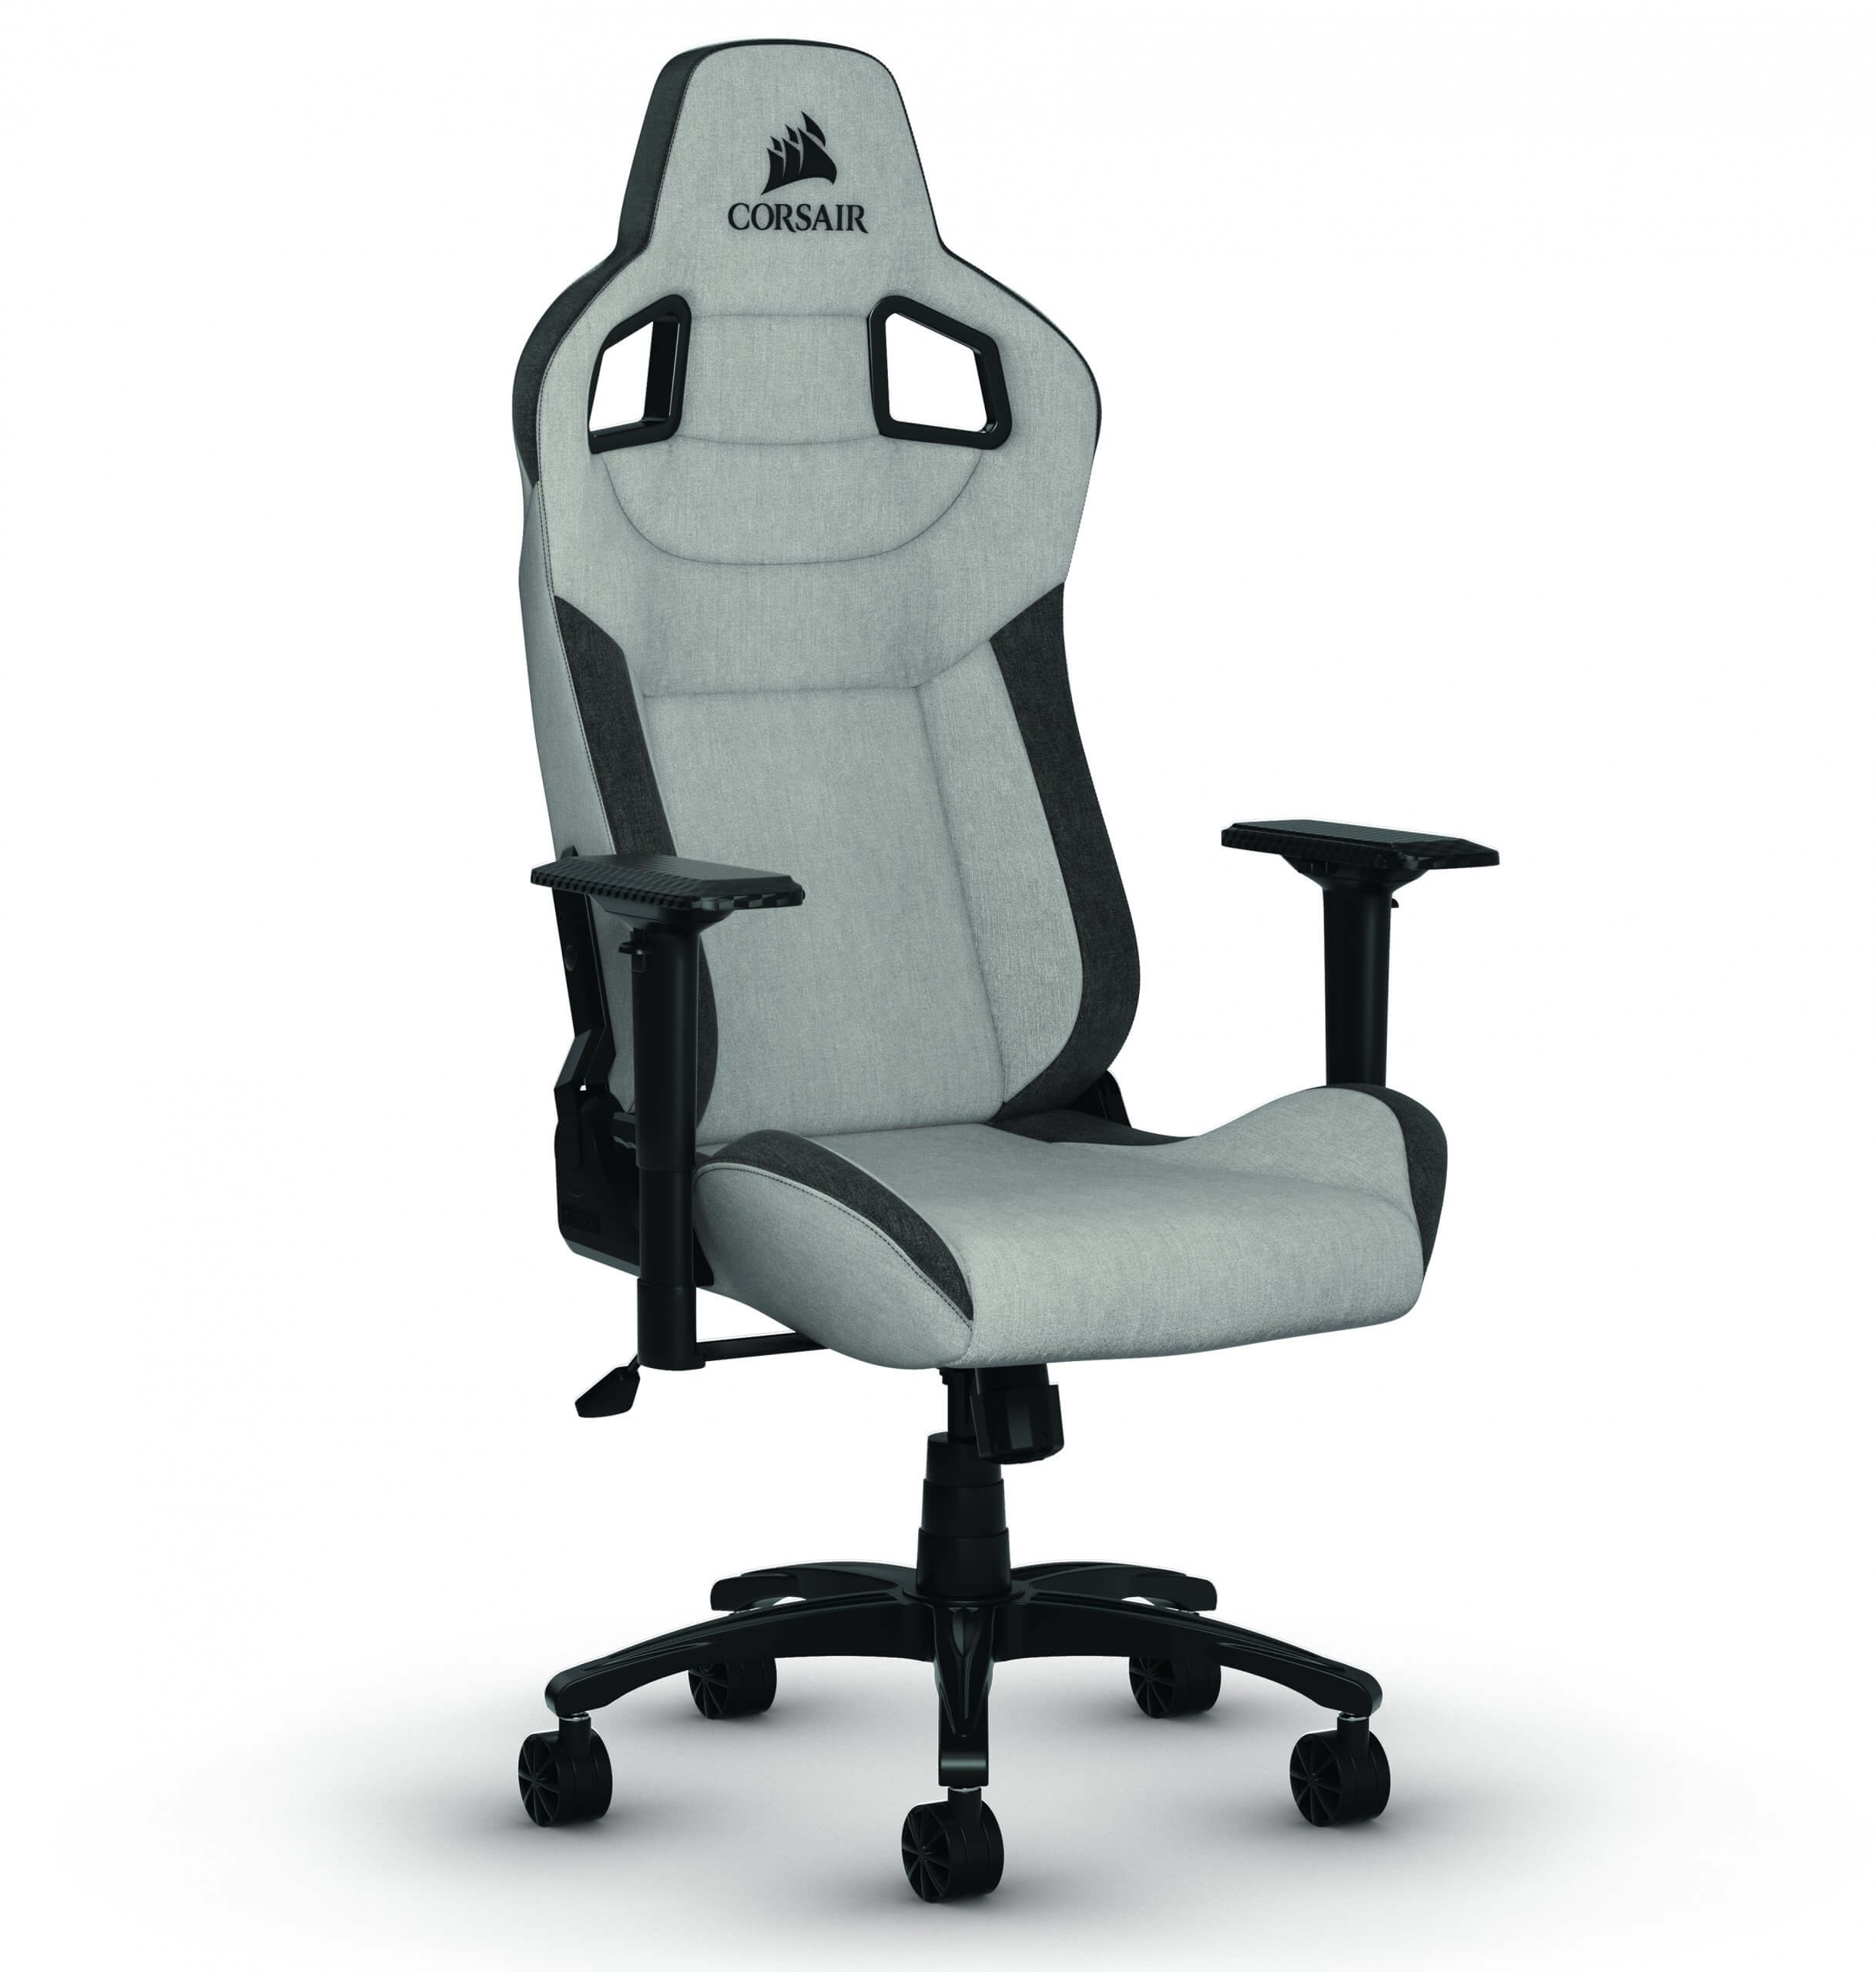 Gaming-Stuhl: Corsair-Stuhl mit Stoffbezug